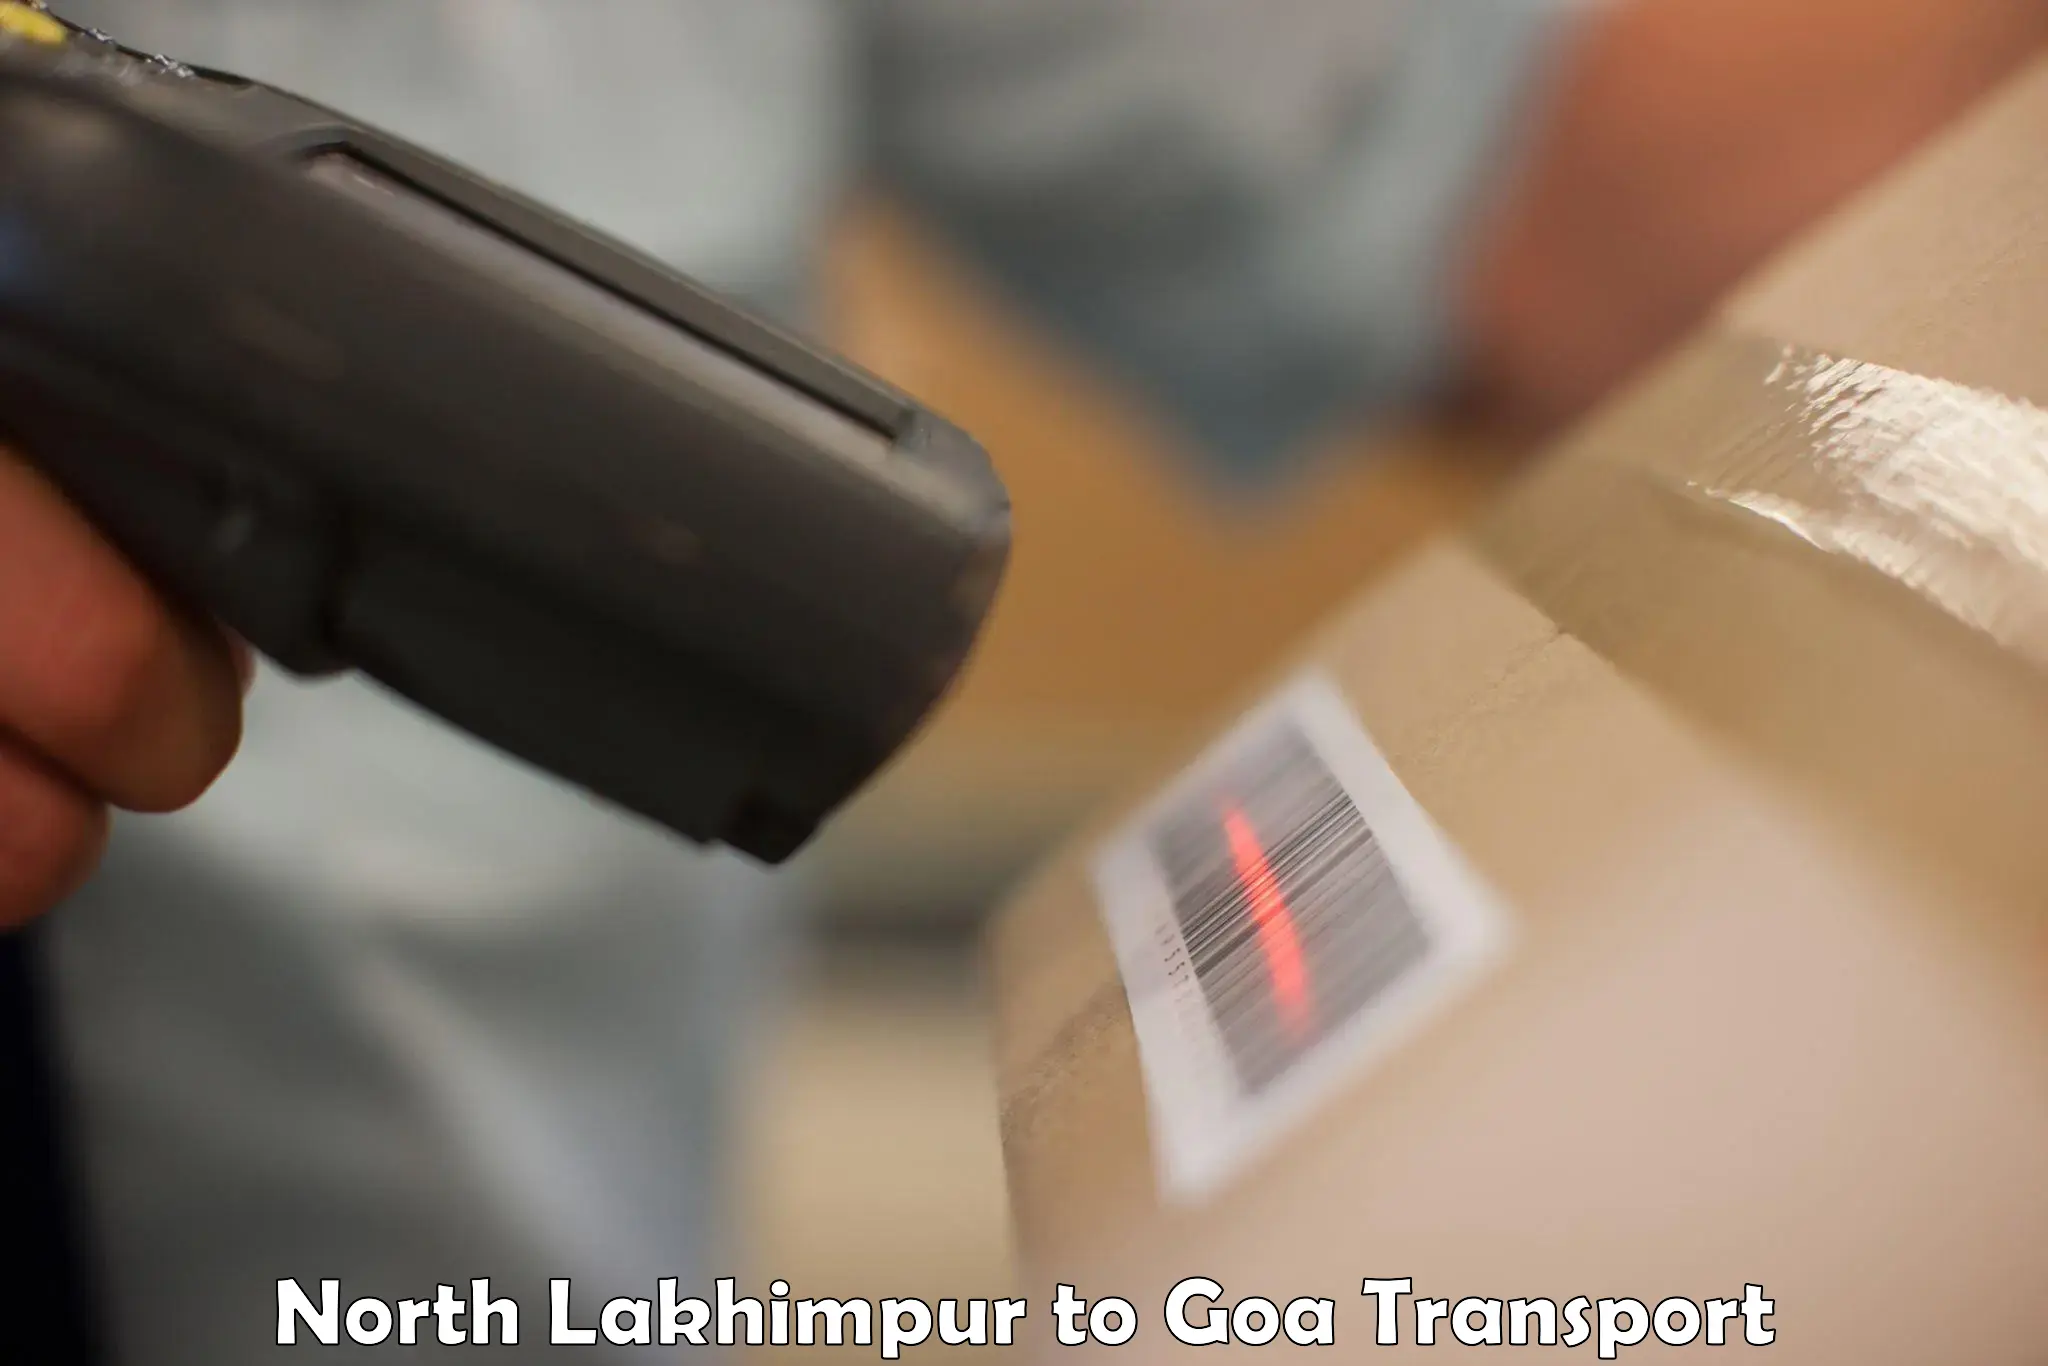 Online transport booking North Lakhimpur to Panaji